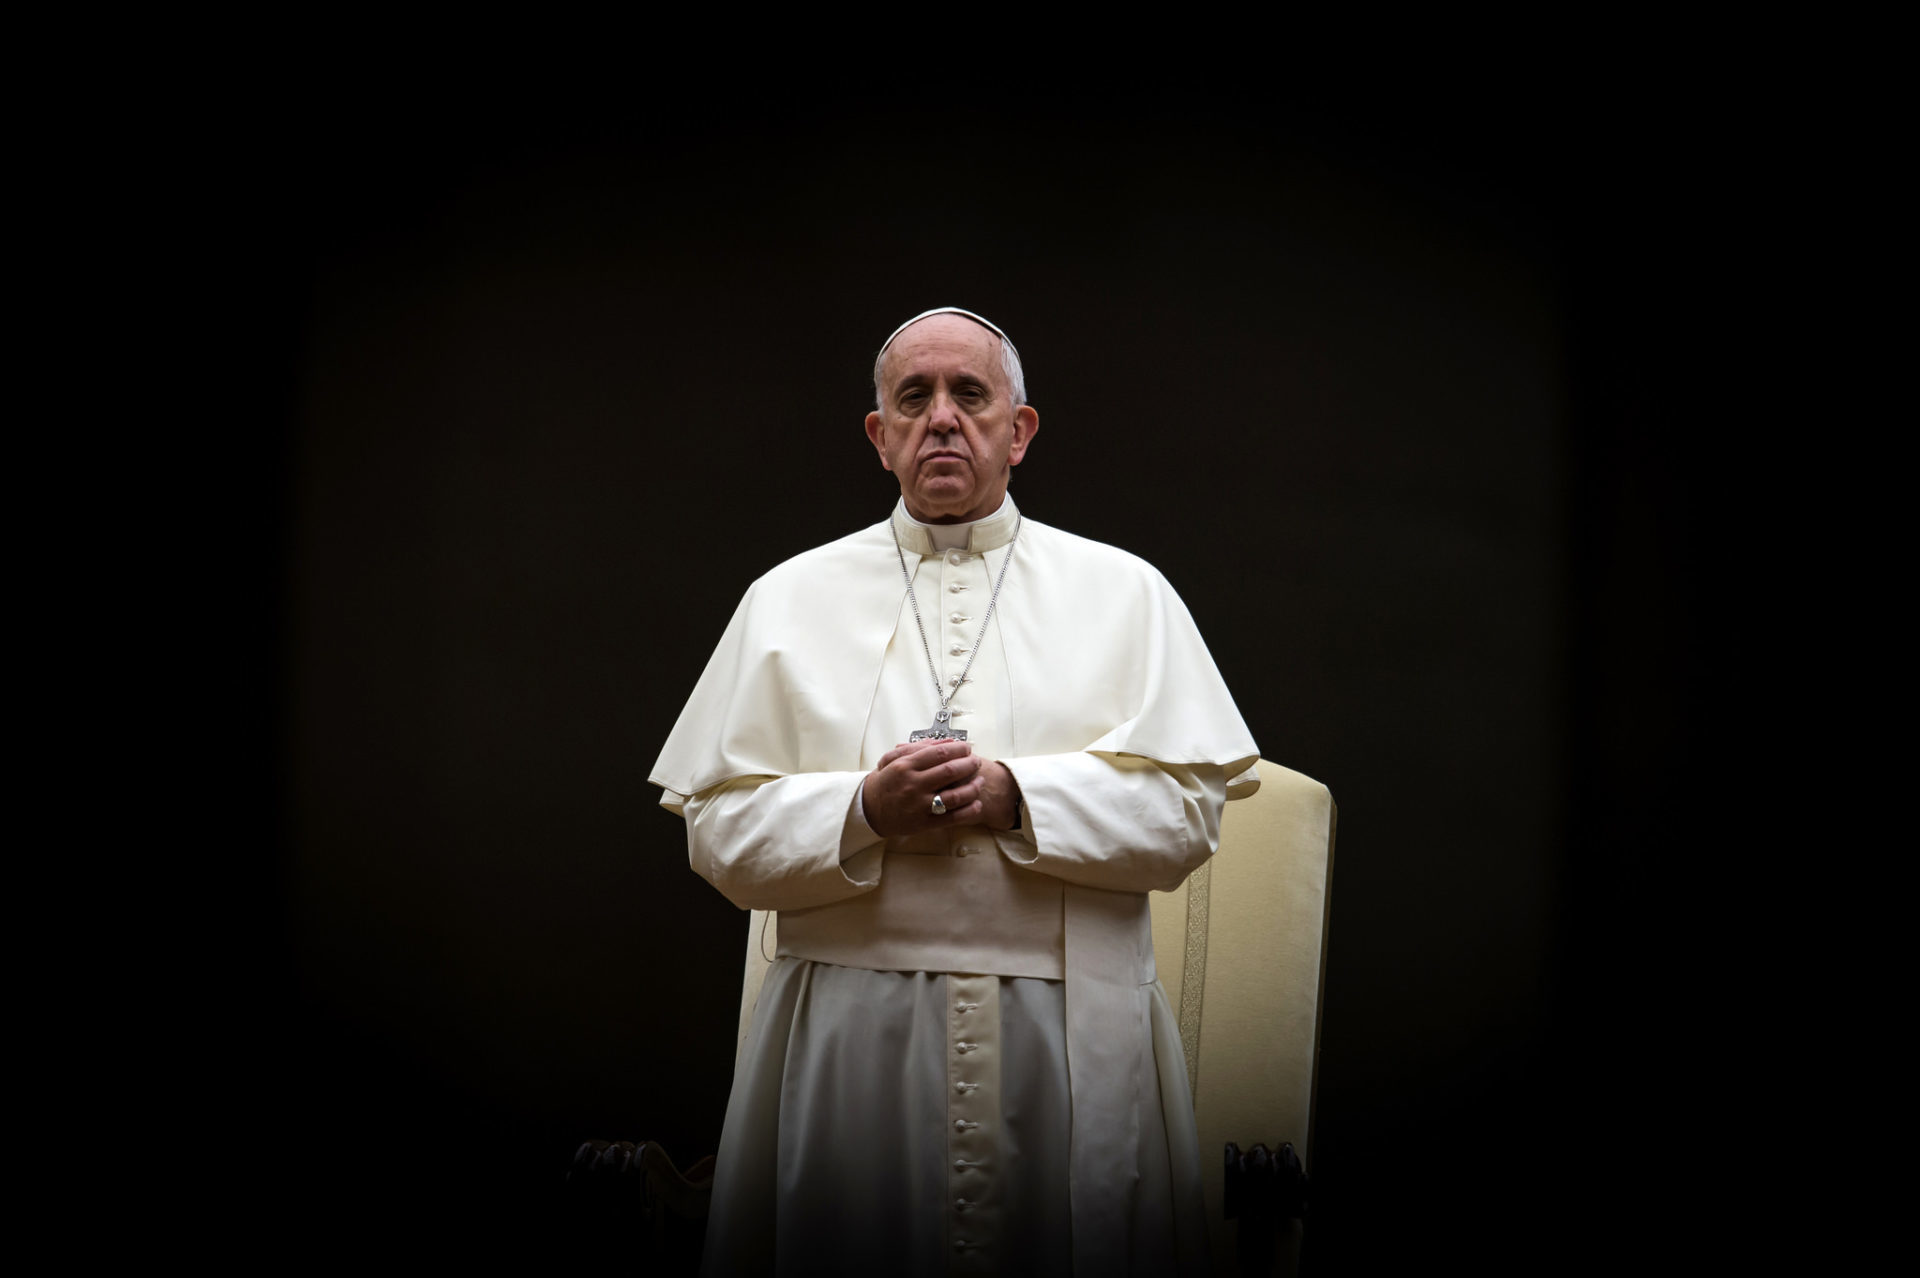 Le pape François a dénoncé les derniers attentats dans le monde (Photo: Catholic Church England/Flickr/CC BY-NC-SA 2.0)